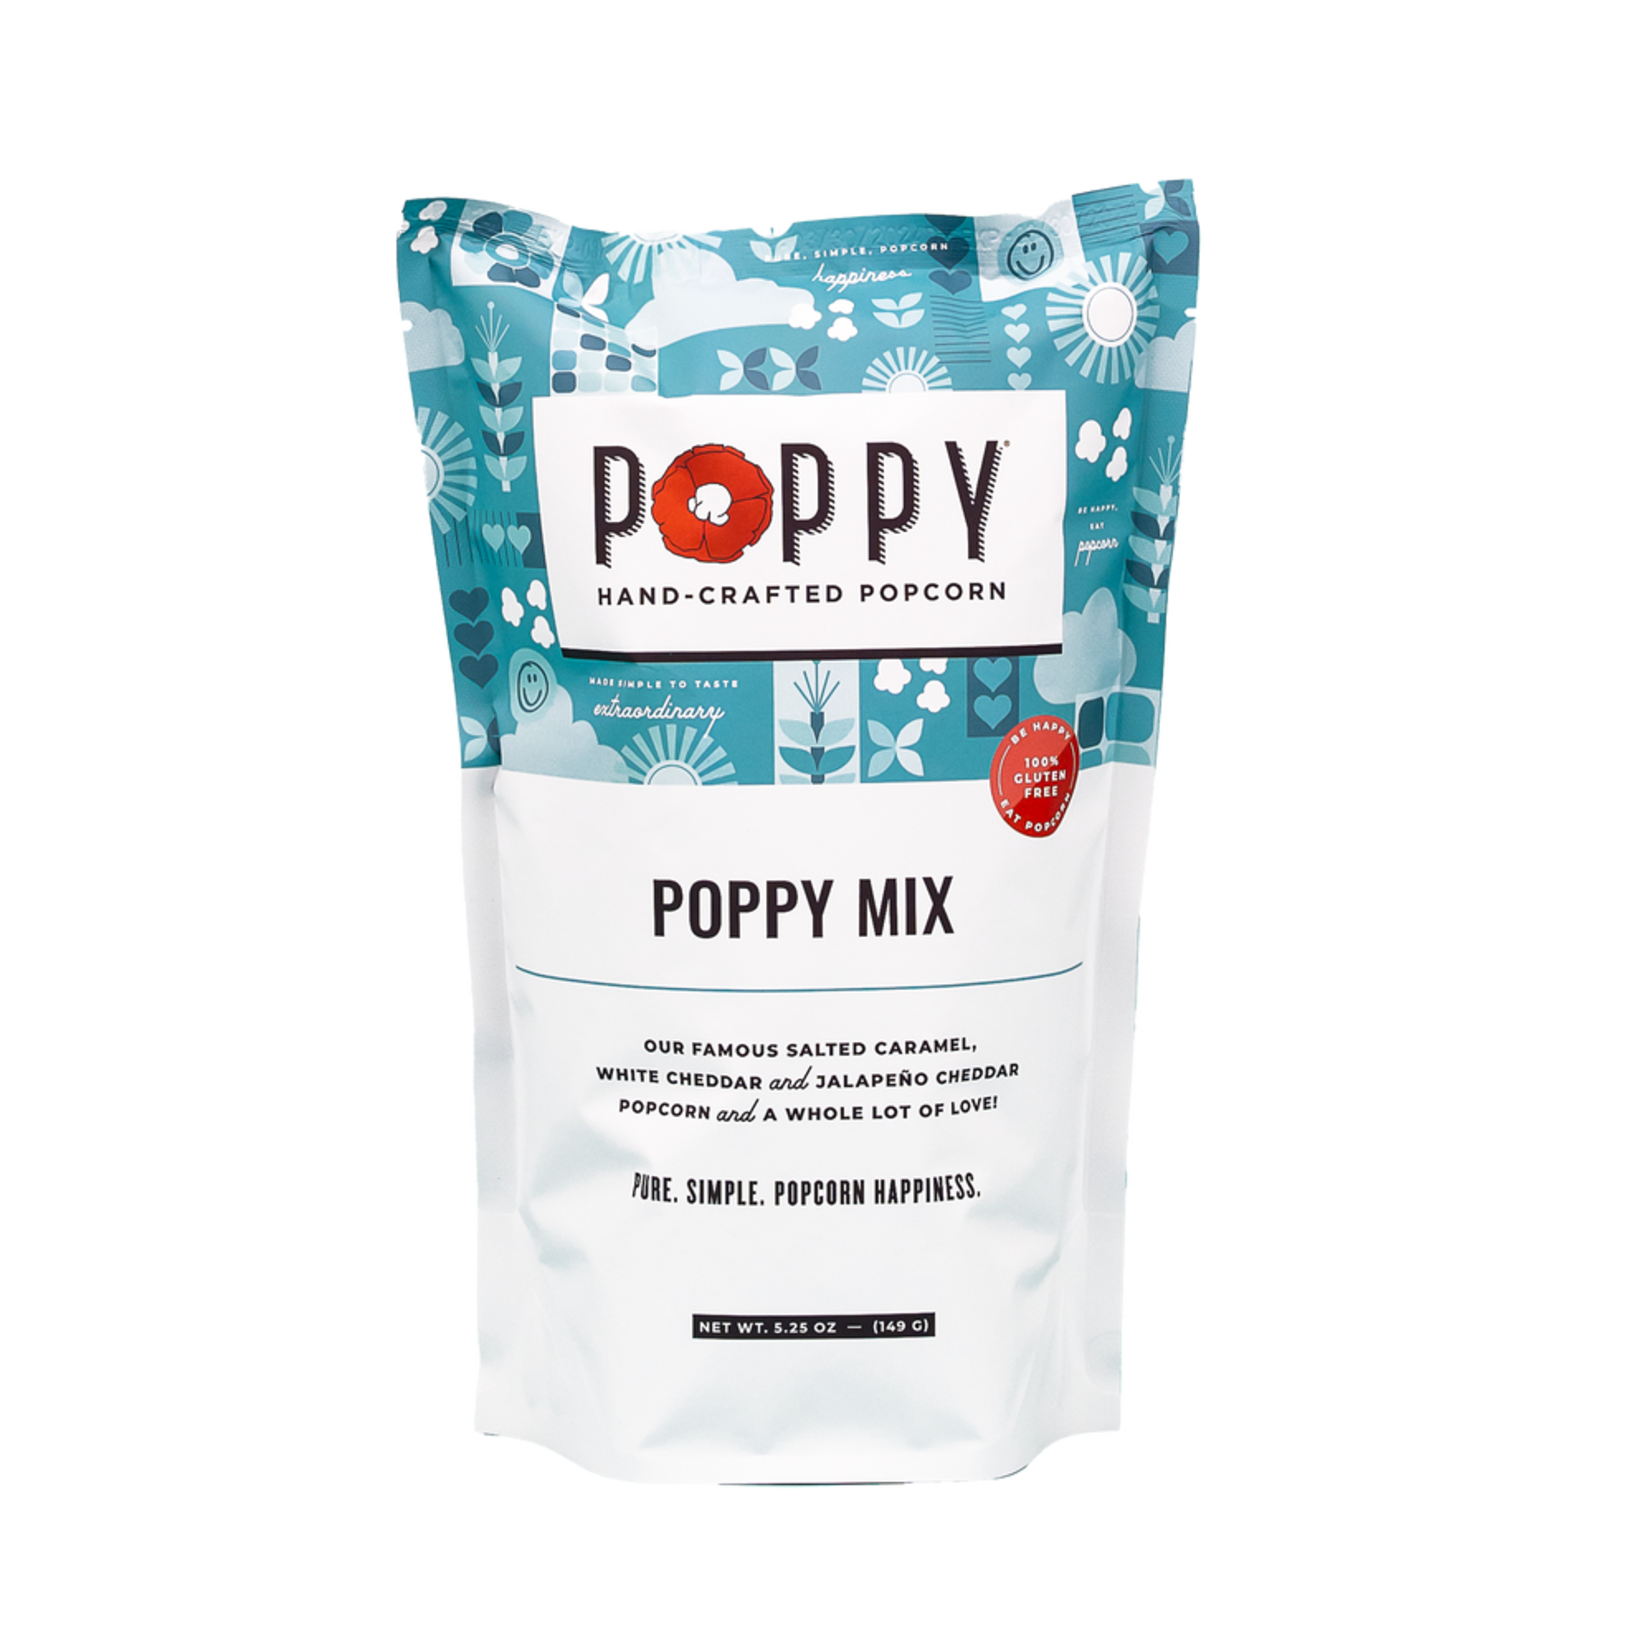 Poppy Handcrafted Popcorn Poppy Handcrafted Popcorn - Poppy Mix